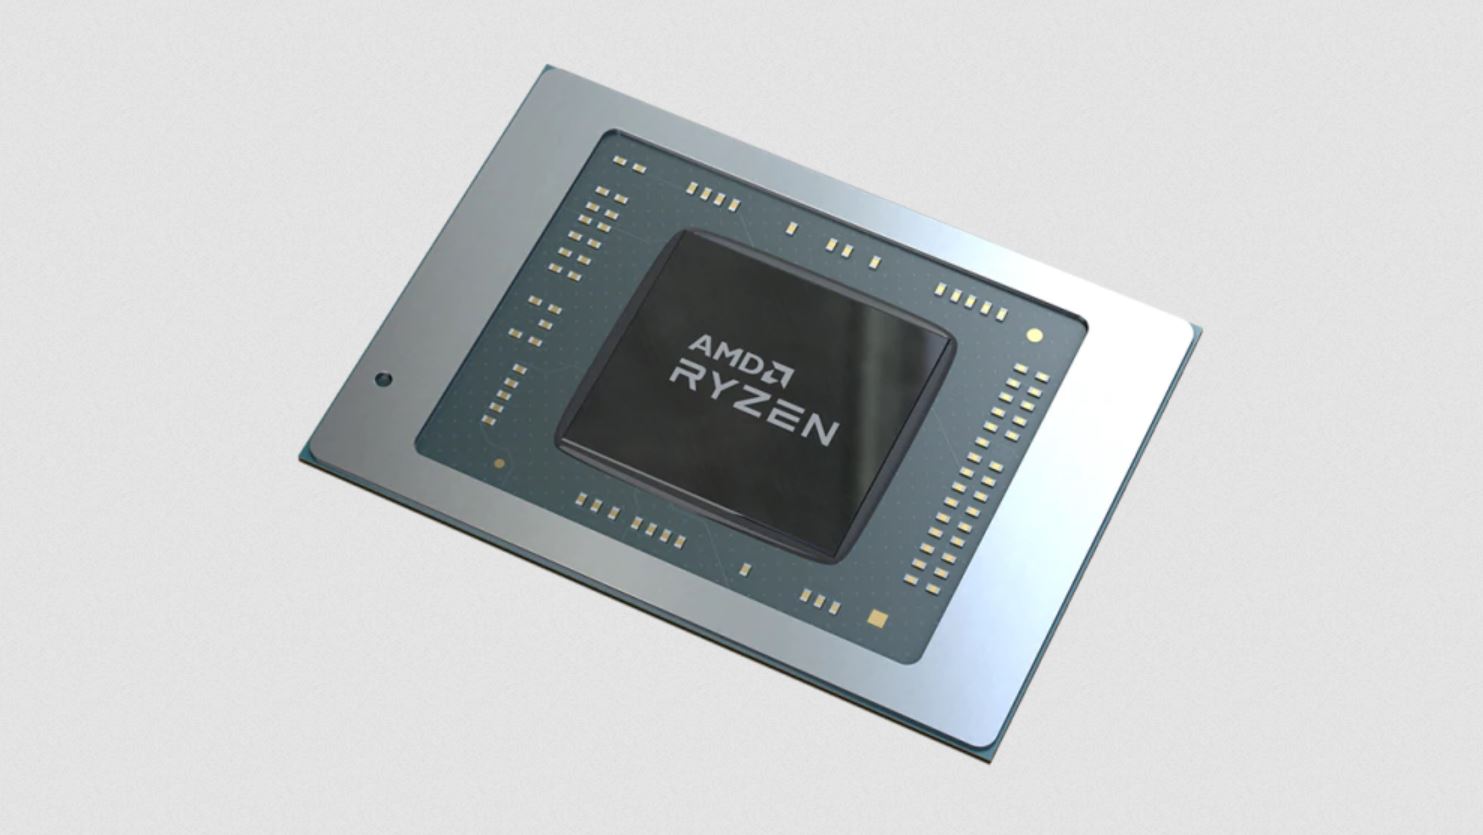 Immagine pubblicata in relazione al seguente contenuto: AMD rilascia il kit Chipset Drivers 2.13.27.501 per le CPU Ryzen e Threadripper | Nome immagine: news31658_AMD-Chipset-Drivers_1.jpg